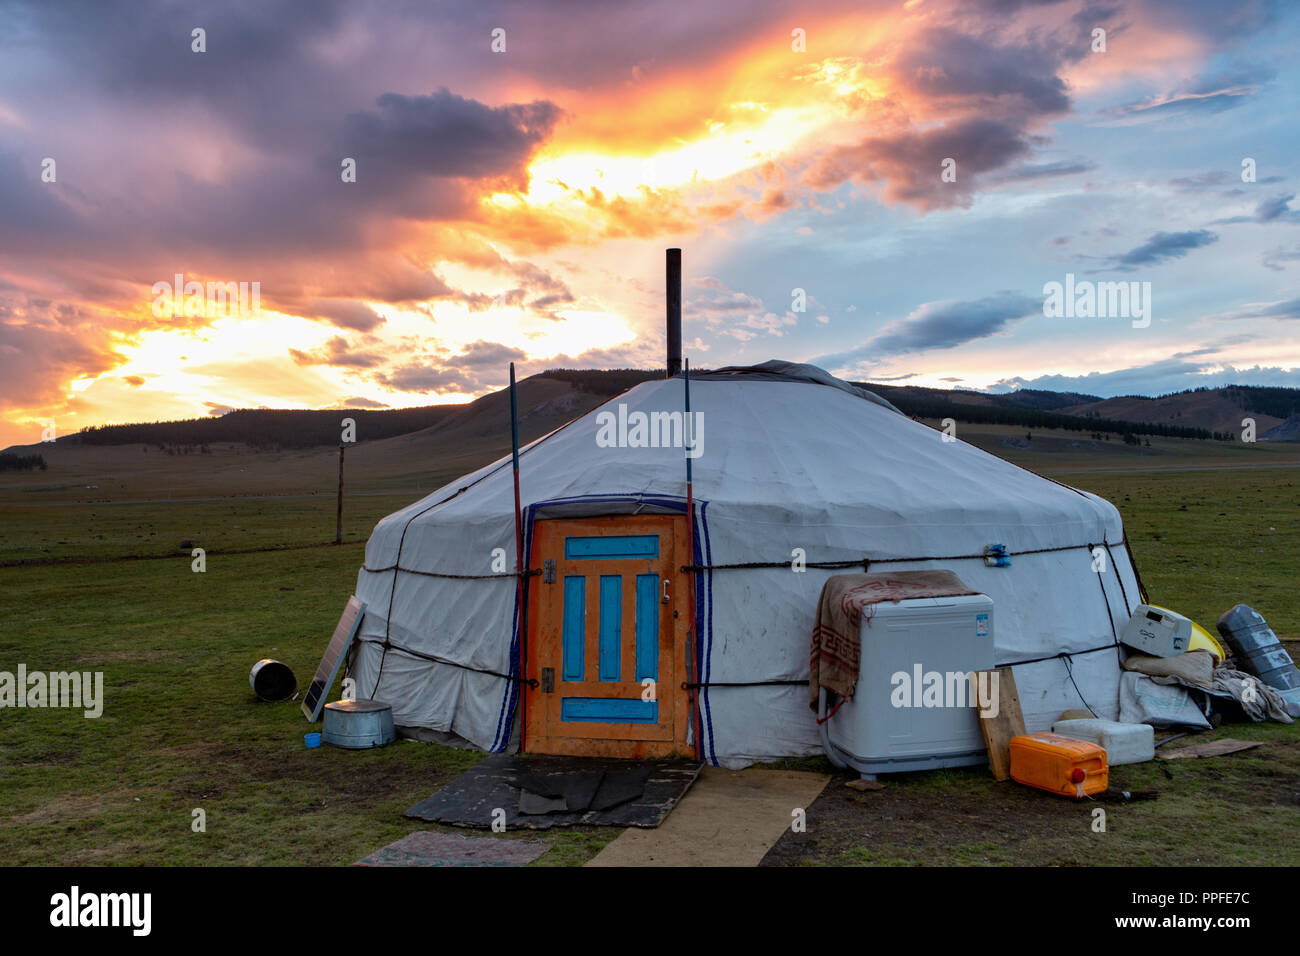 Dramatic sunset over a mongolian yurt, Khatgal, Mongolia Stock Photo